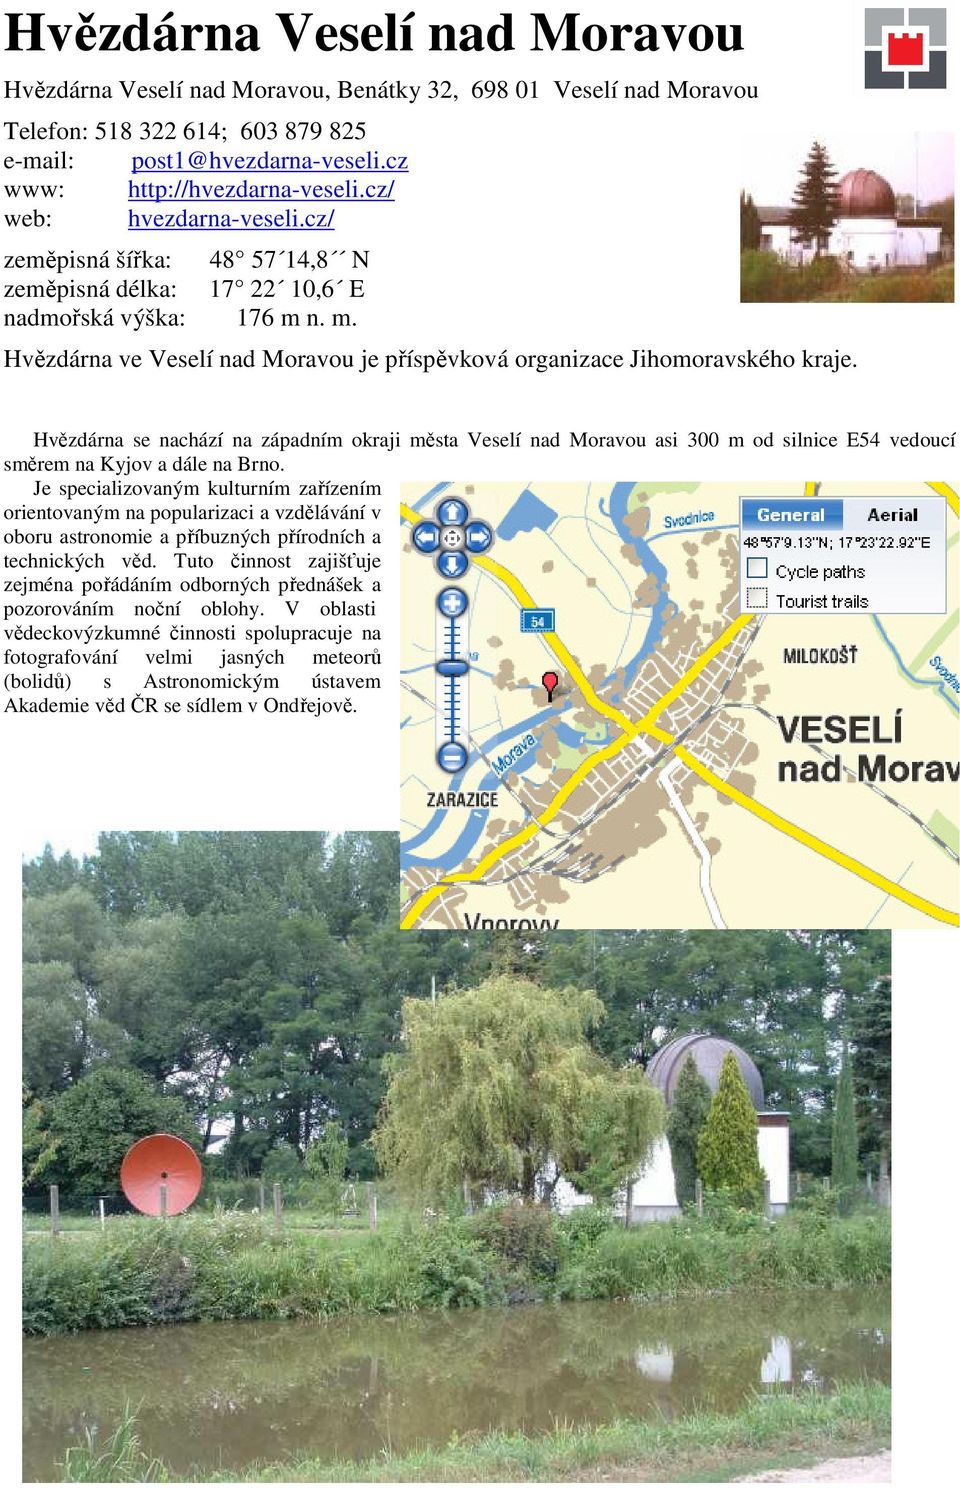 Hvězdárna se nachází na západním okraji města Veselí nad Moravou asi 300 m od silnice E54 vedoucí směrem na Kyjov a dále na Brno.